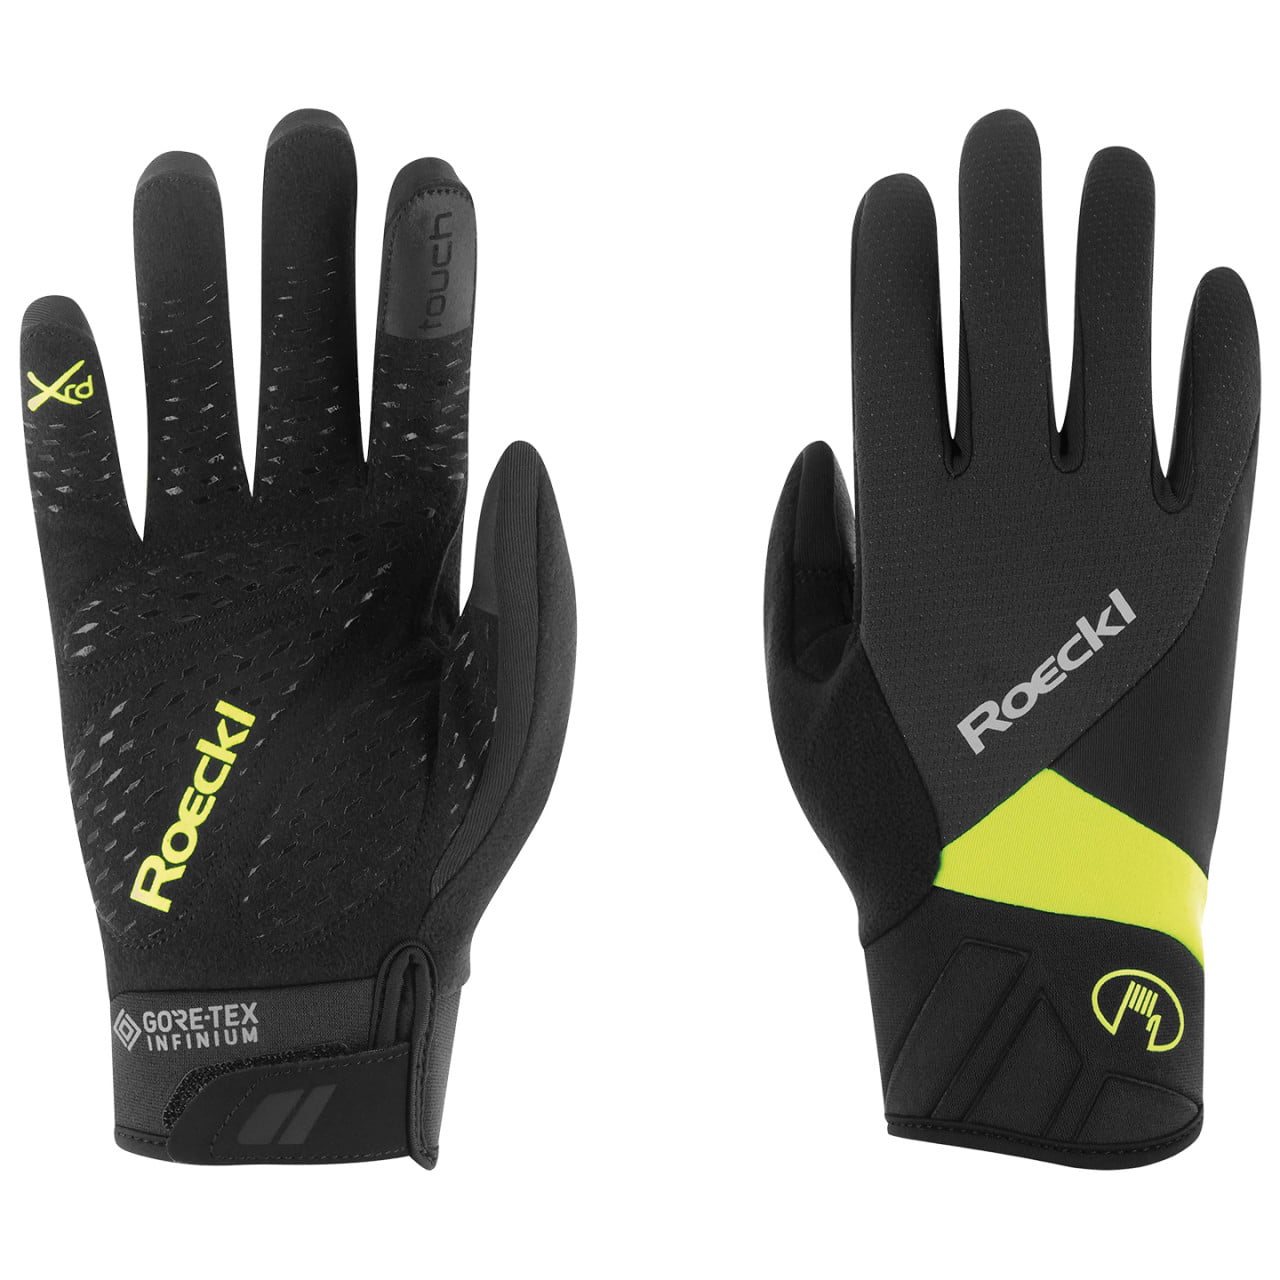 Runaz Winter Gloves